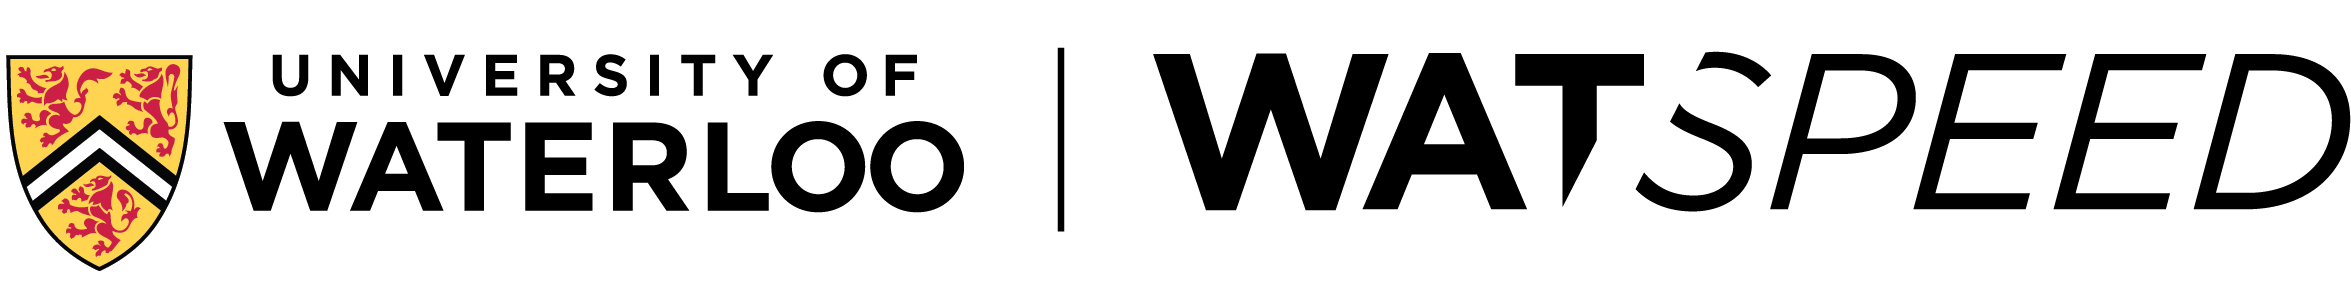 watspeed logo